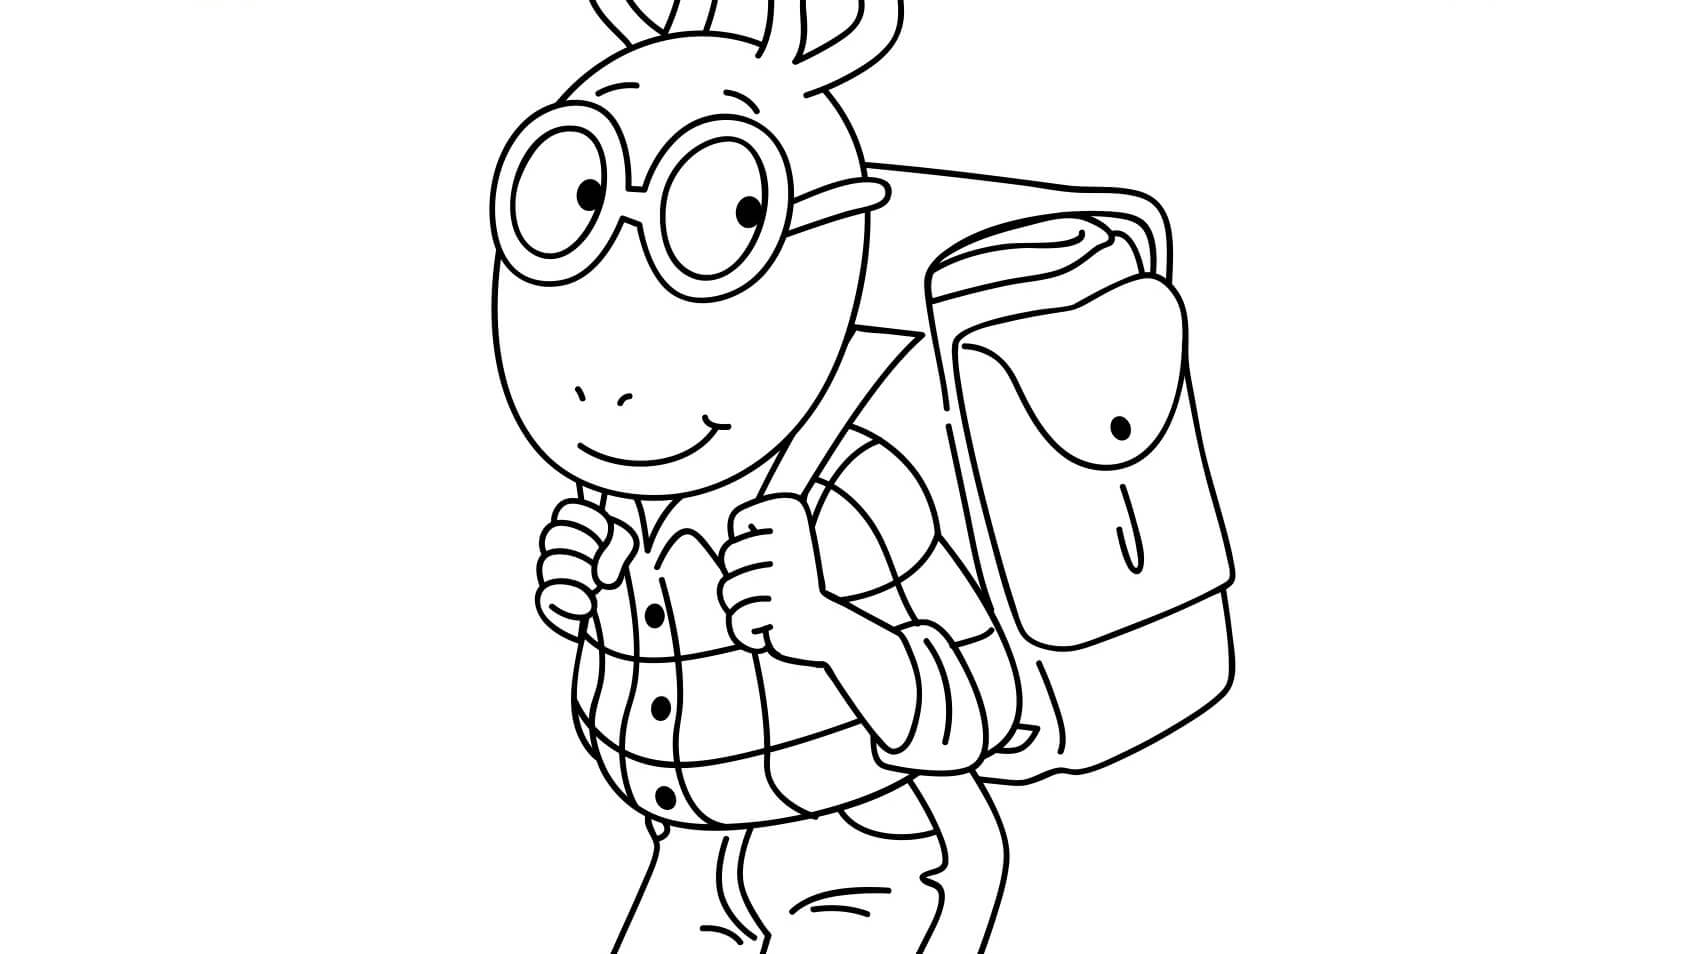 Arthur Read ir a la Escuela para colorir